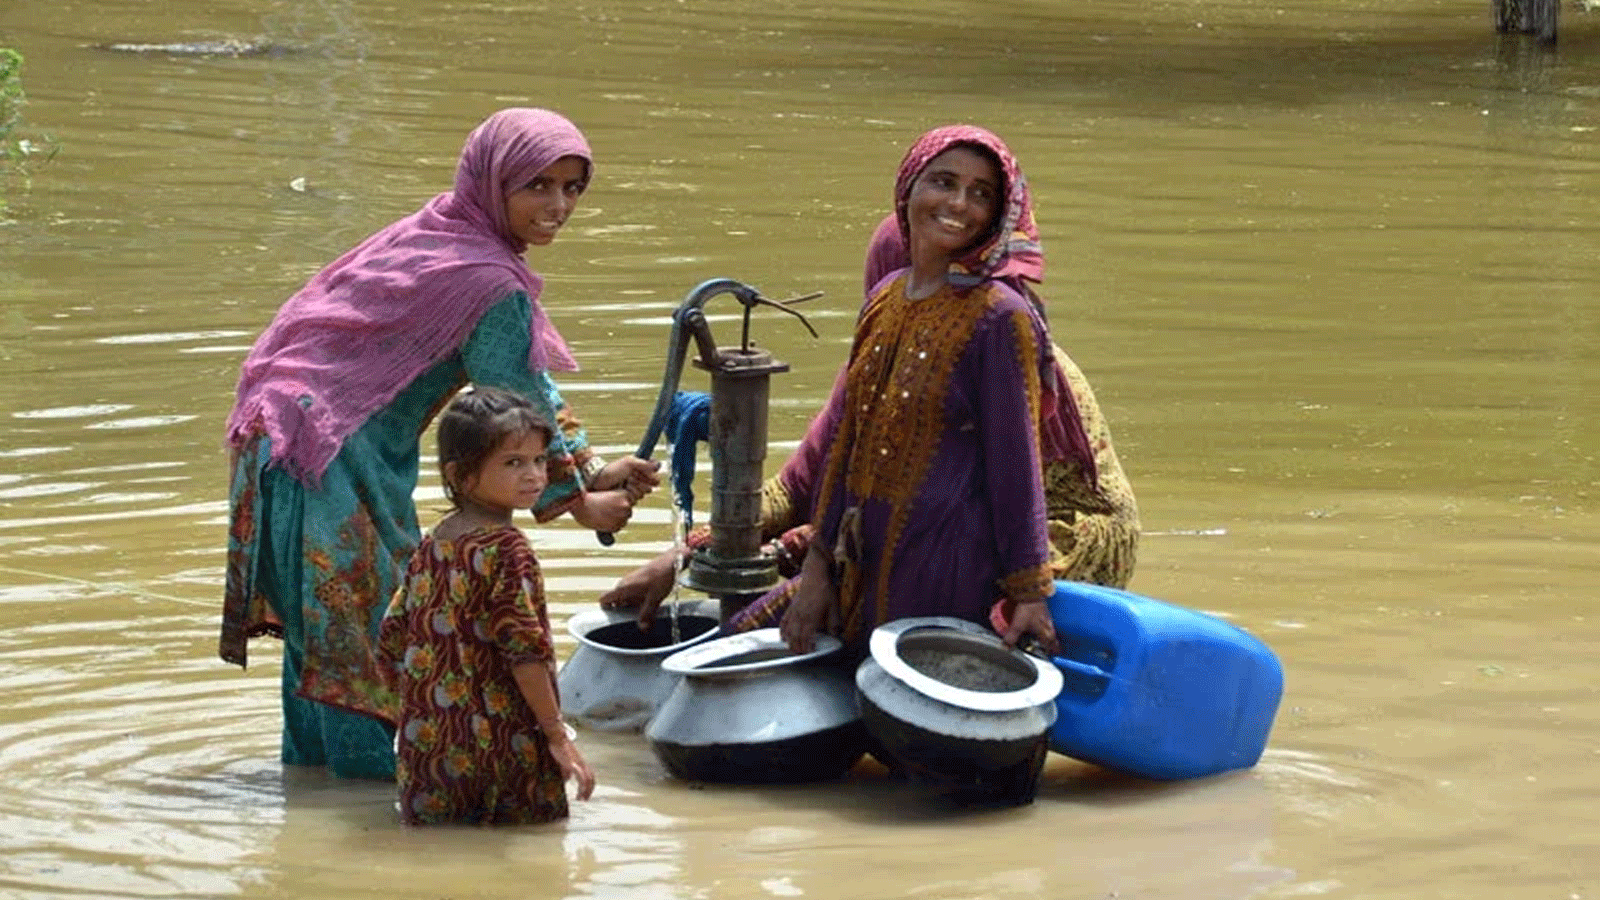 نساء متضررات من الفيضانات يملأن مياه الشرب من مضخة يدوية وسط شارع غمرته الفيضانات بعد هطول أمطار موسمية غزيرة في منطقة جعفر أباد في إقليم بلوشستان في 29 آب\ أغسطس 2022.